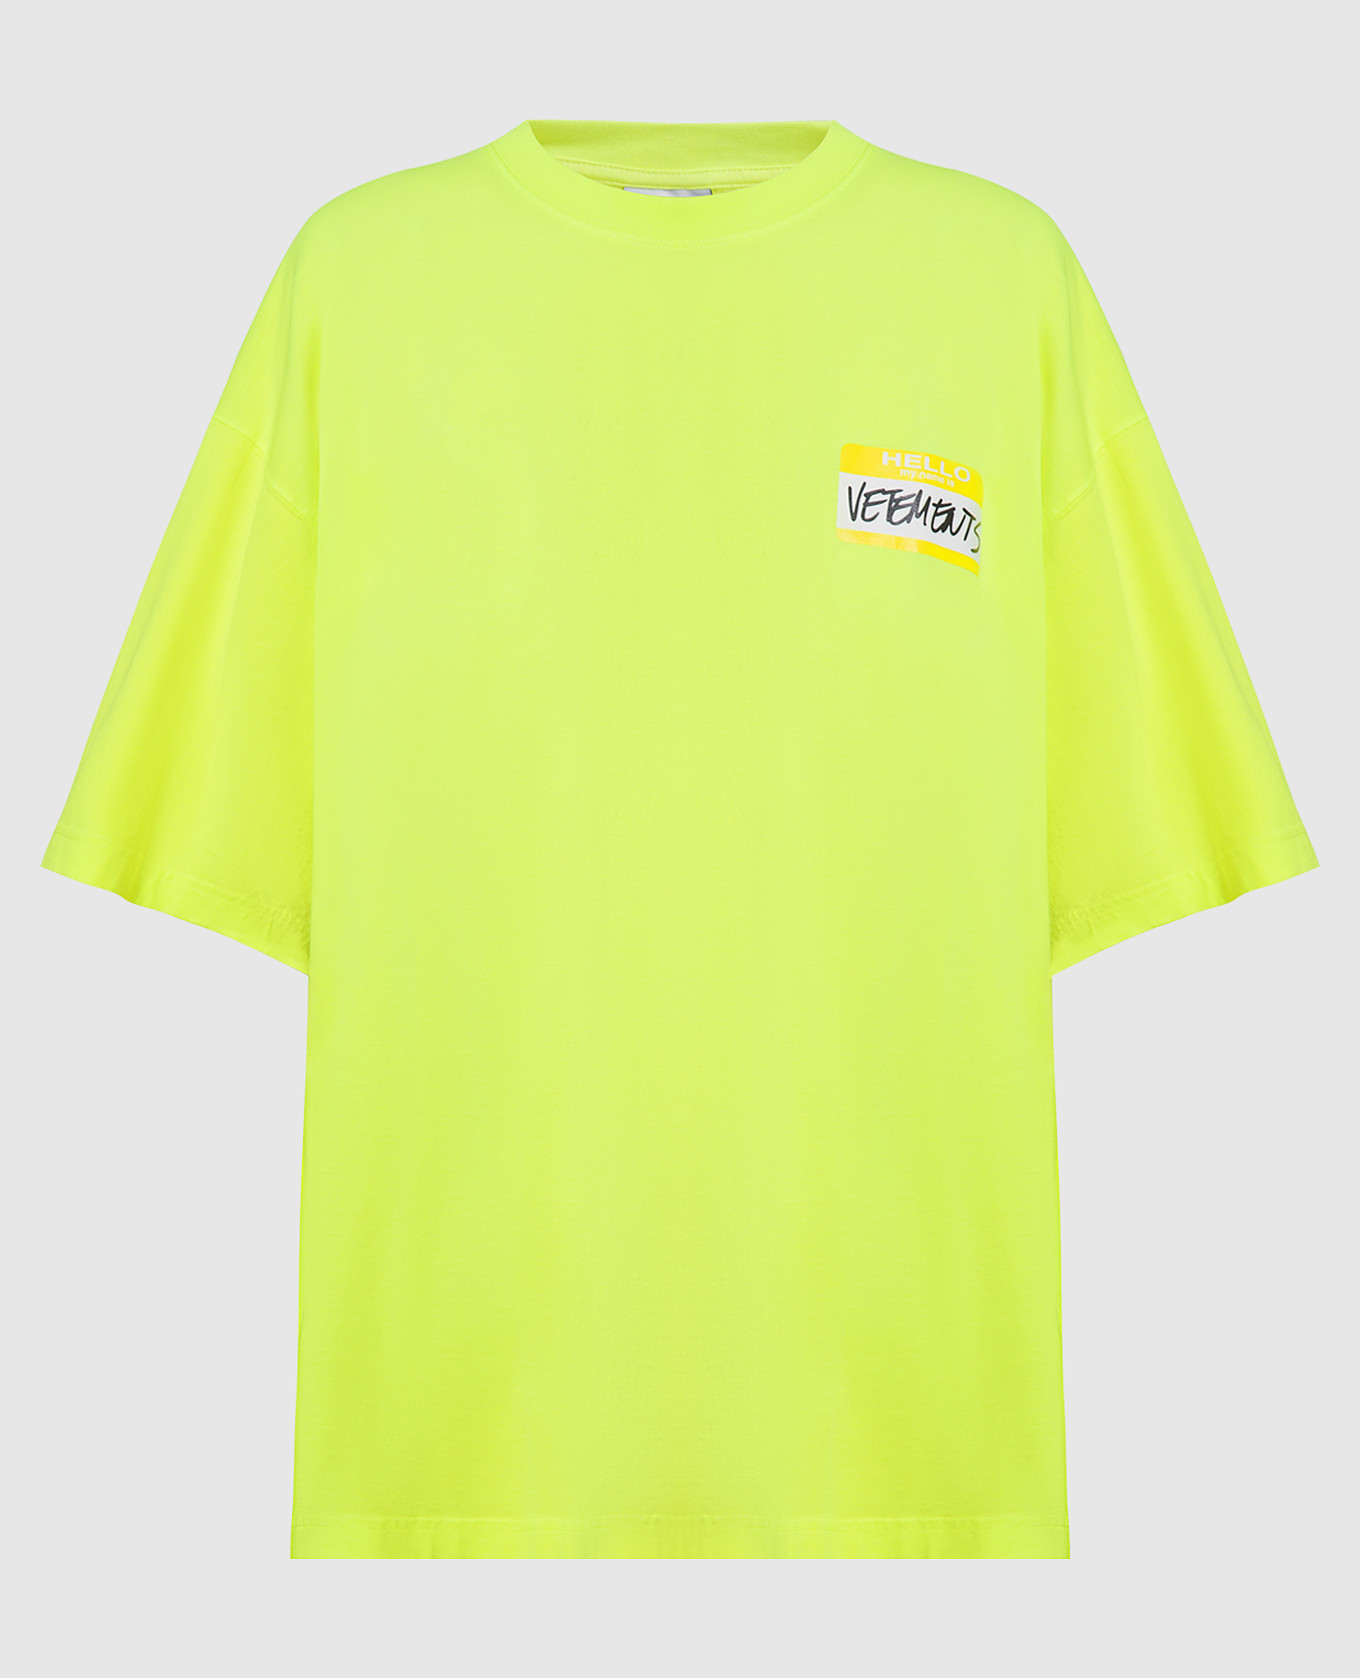 Неоновая желтая футболка с принтом логотипа